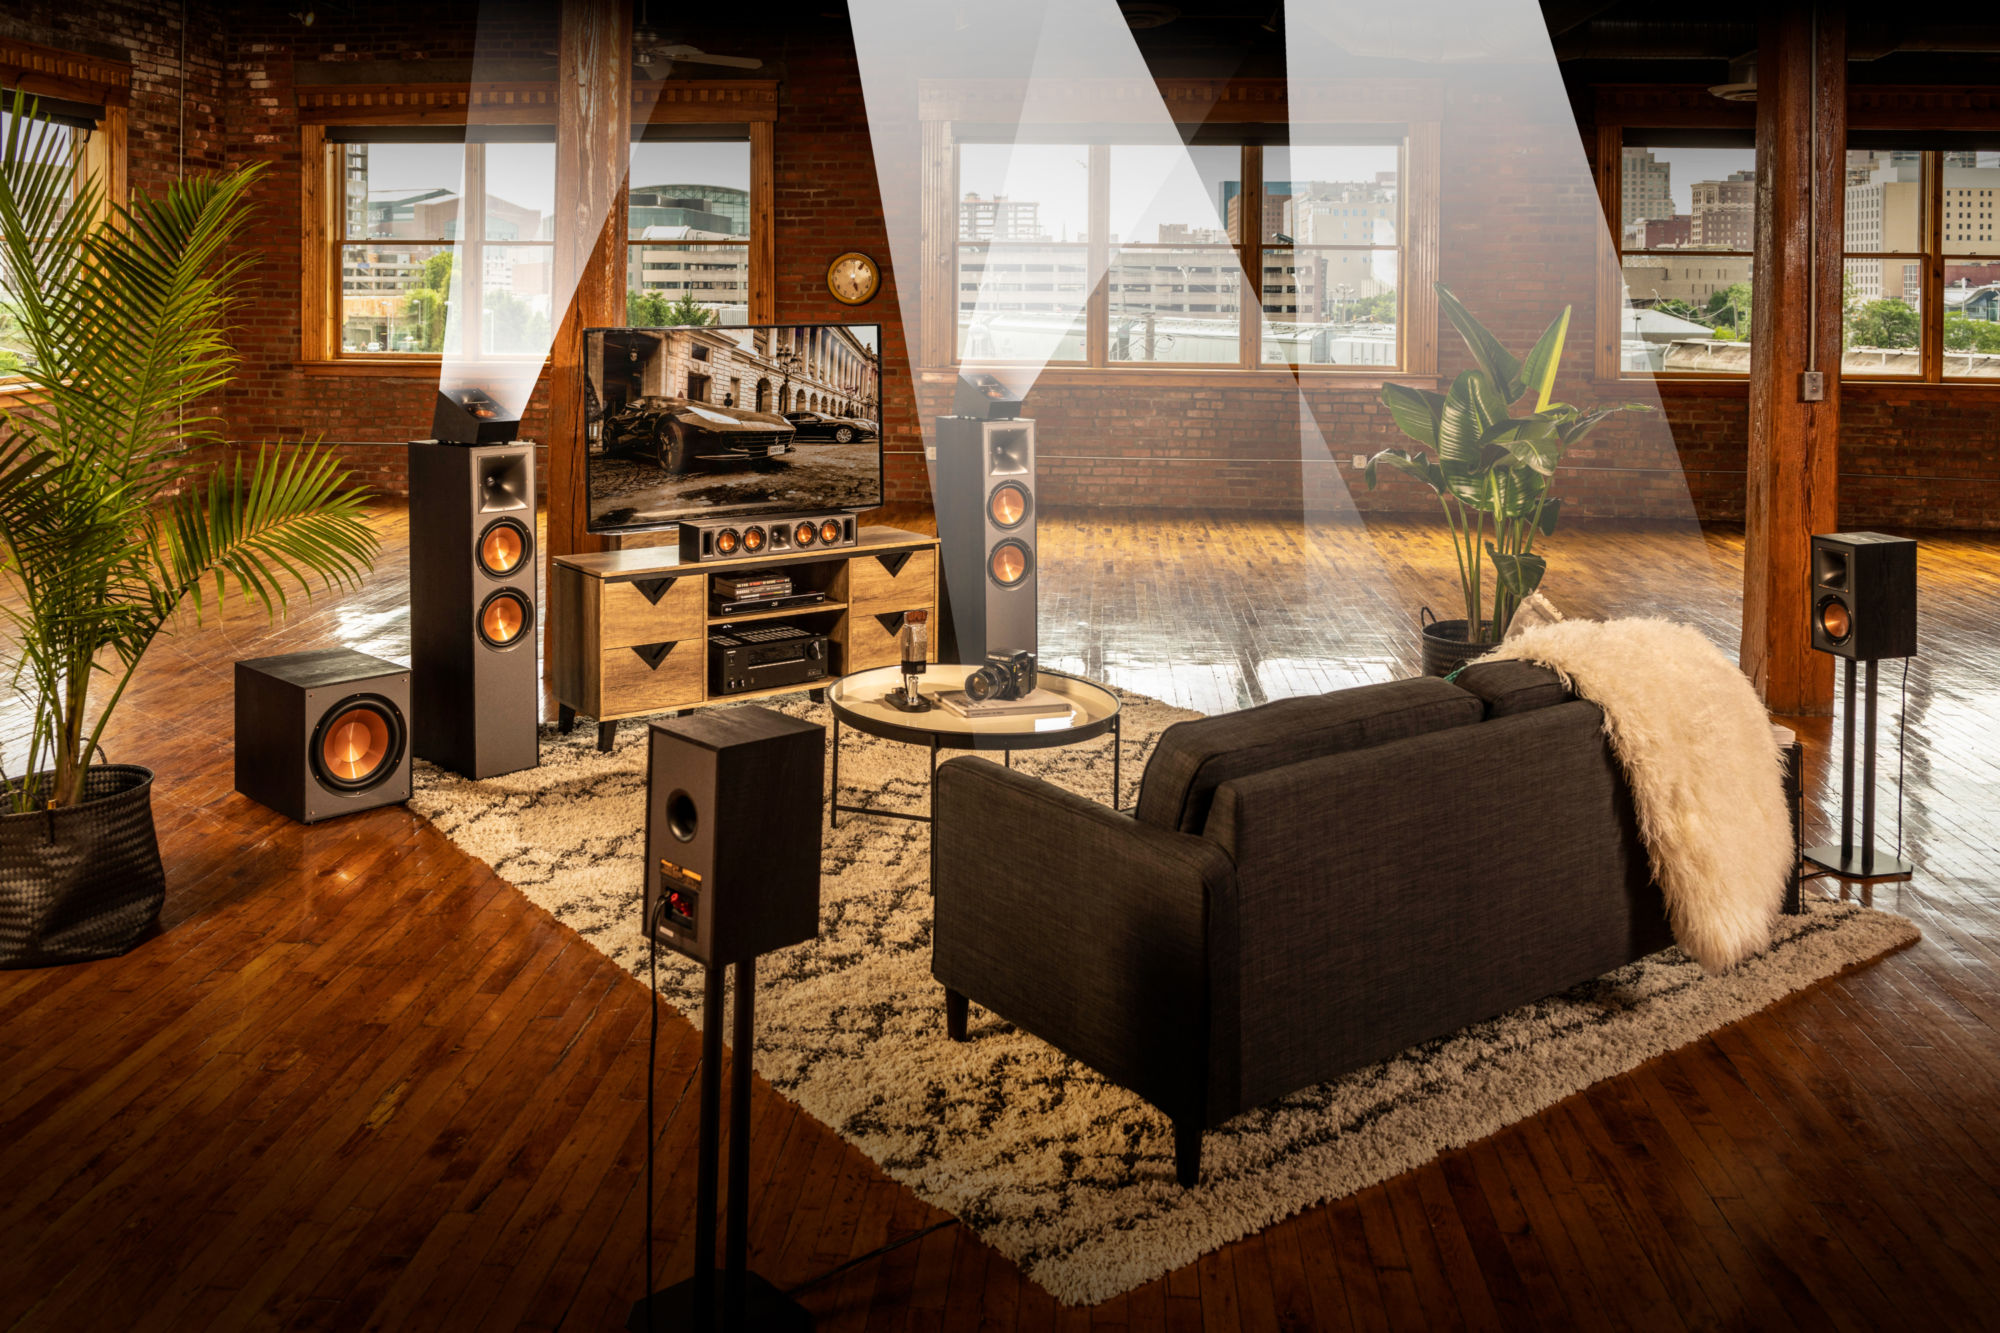 Klipsch speaker system with tv in living room